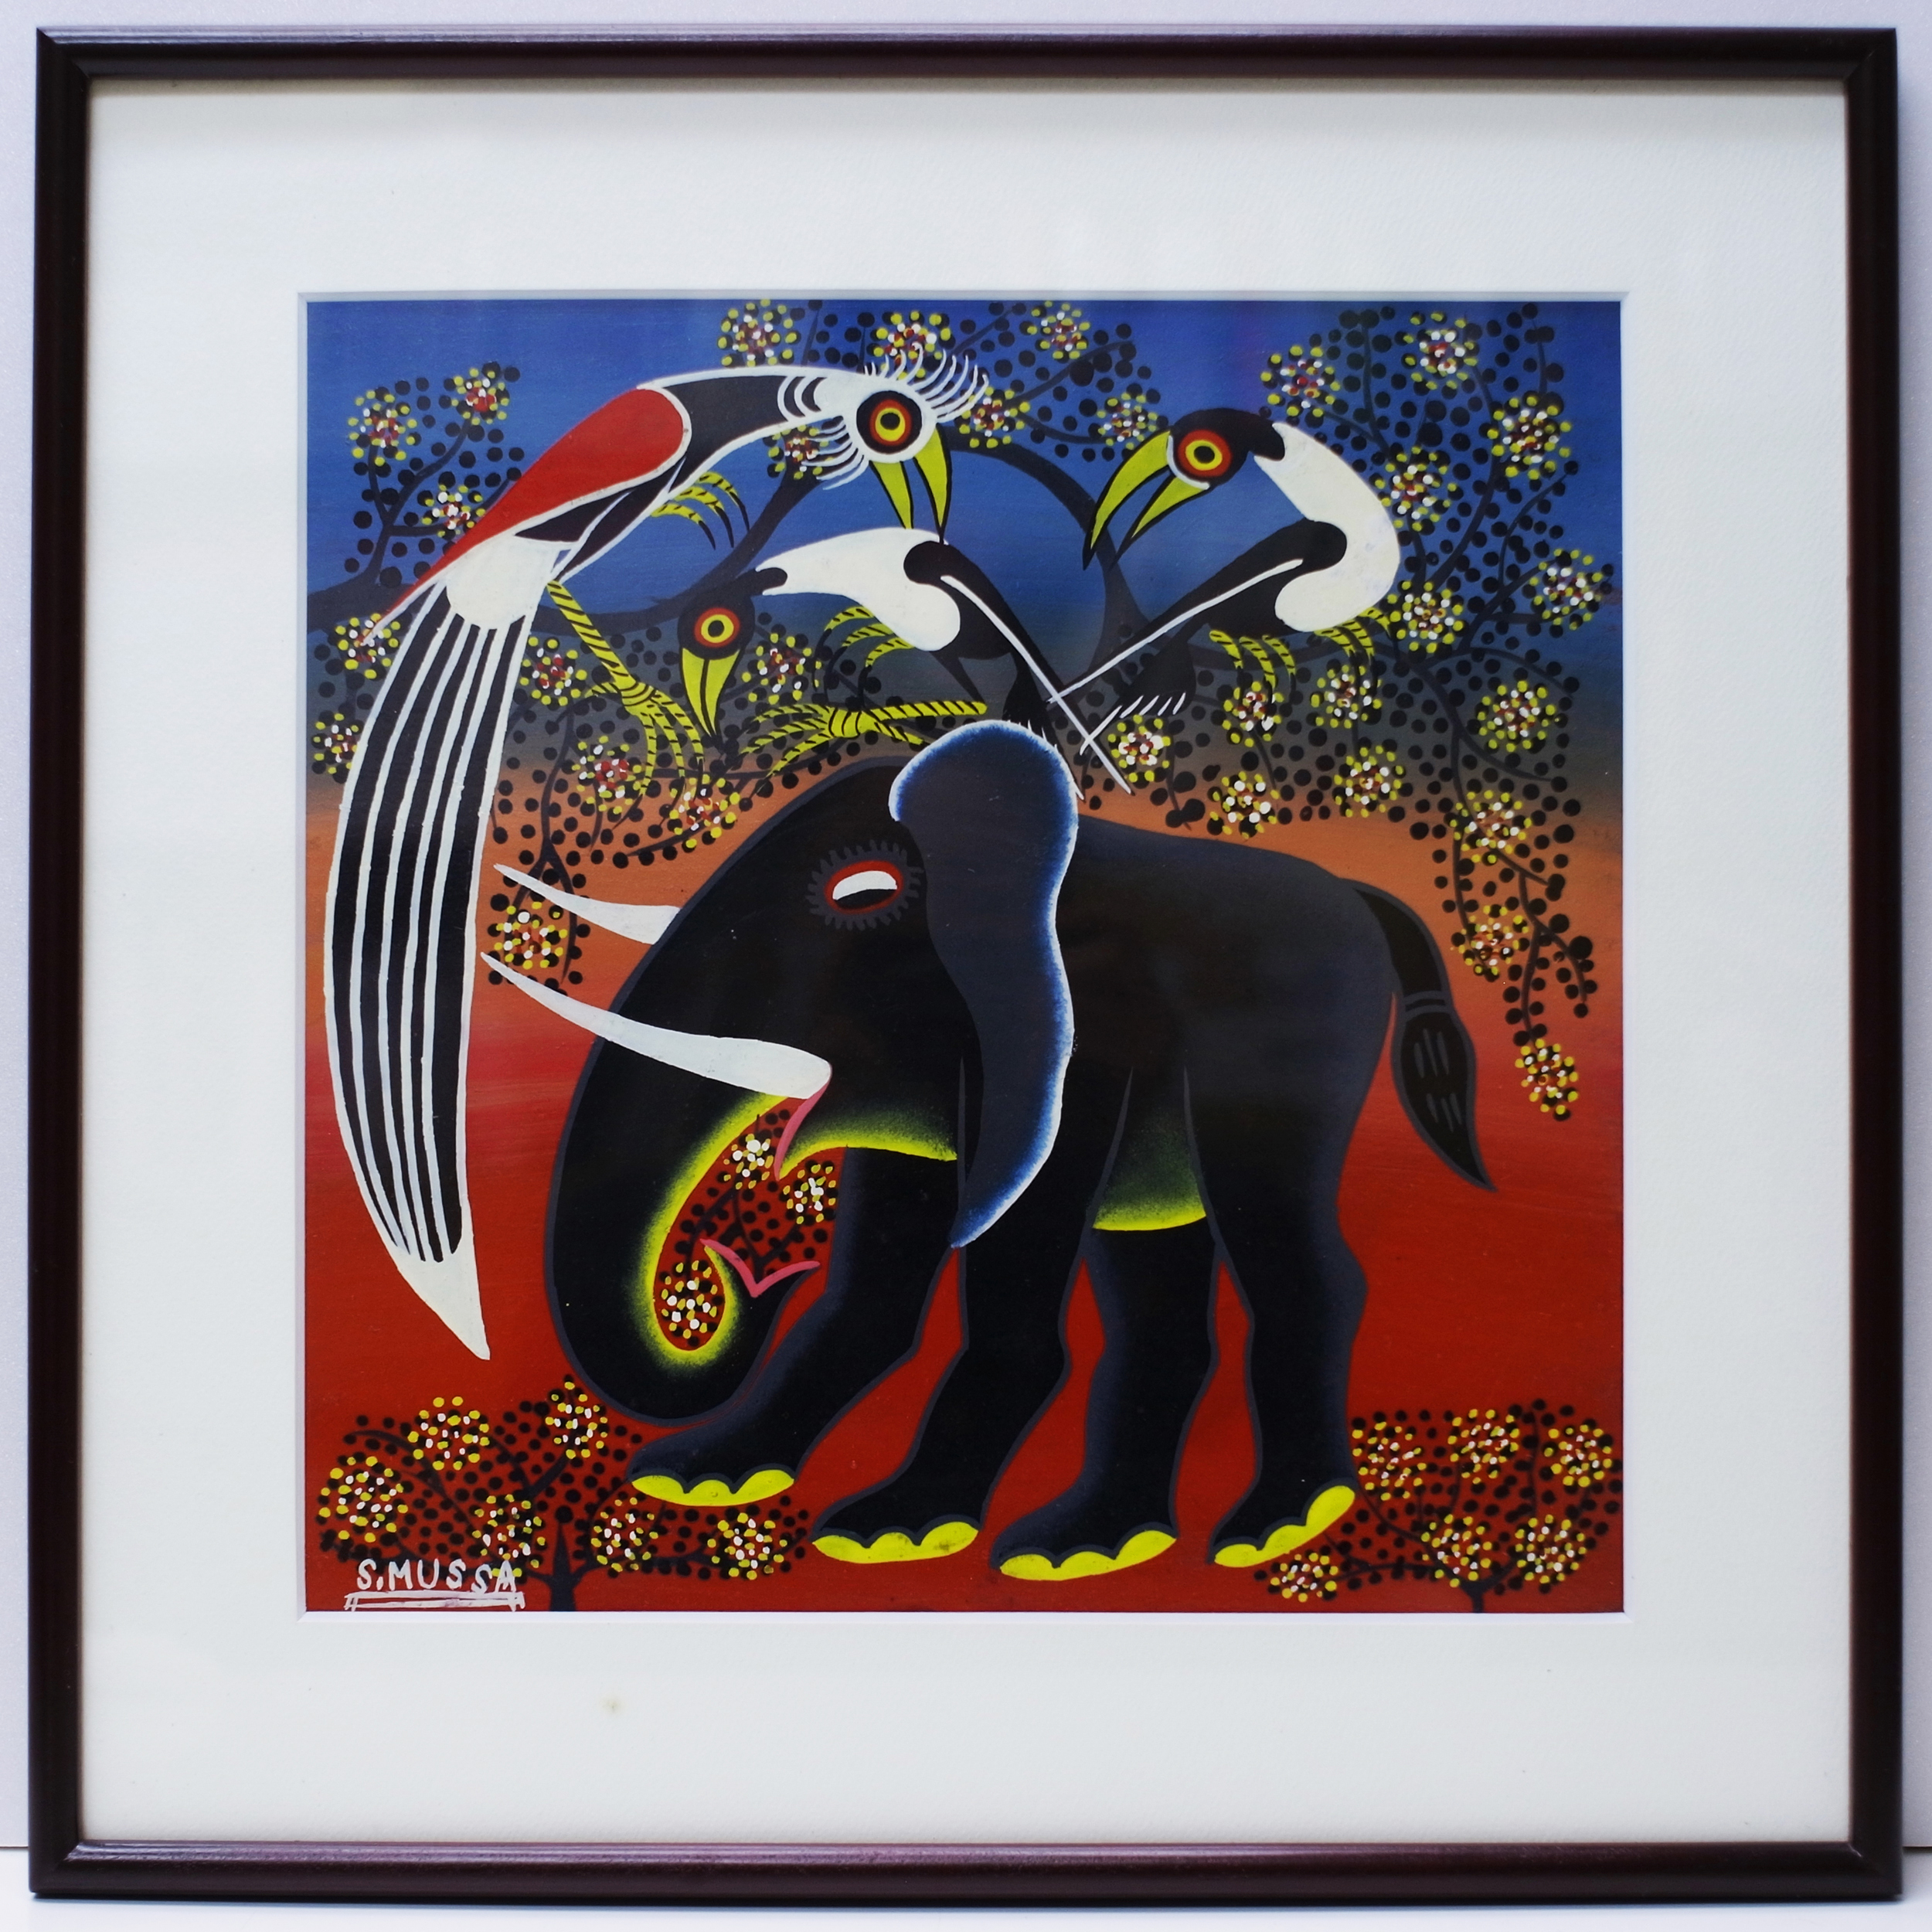 Elephant (300~300 Framed)